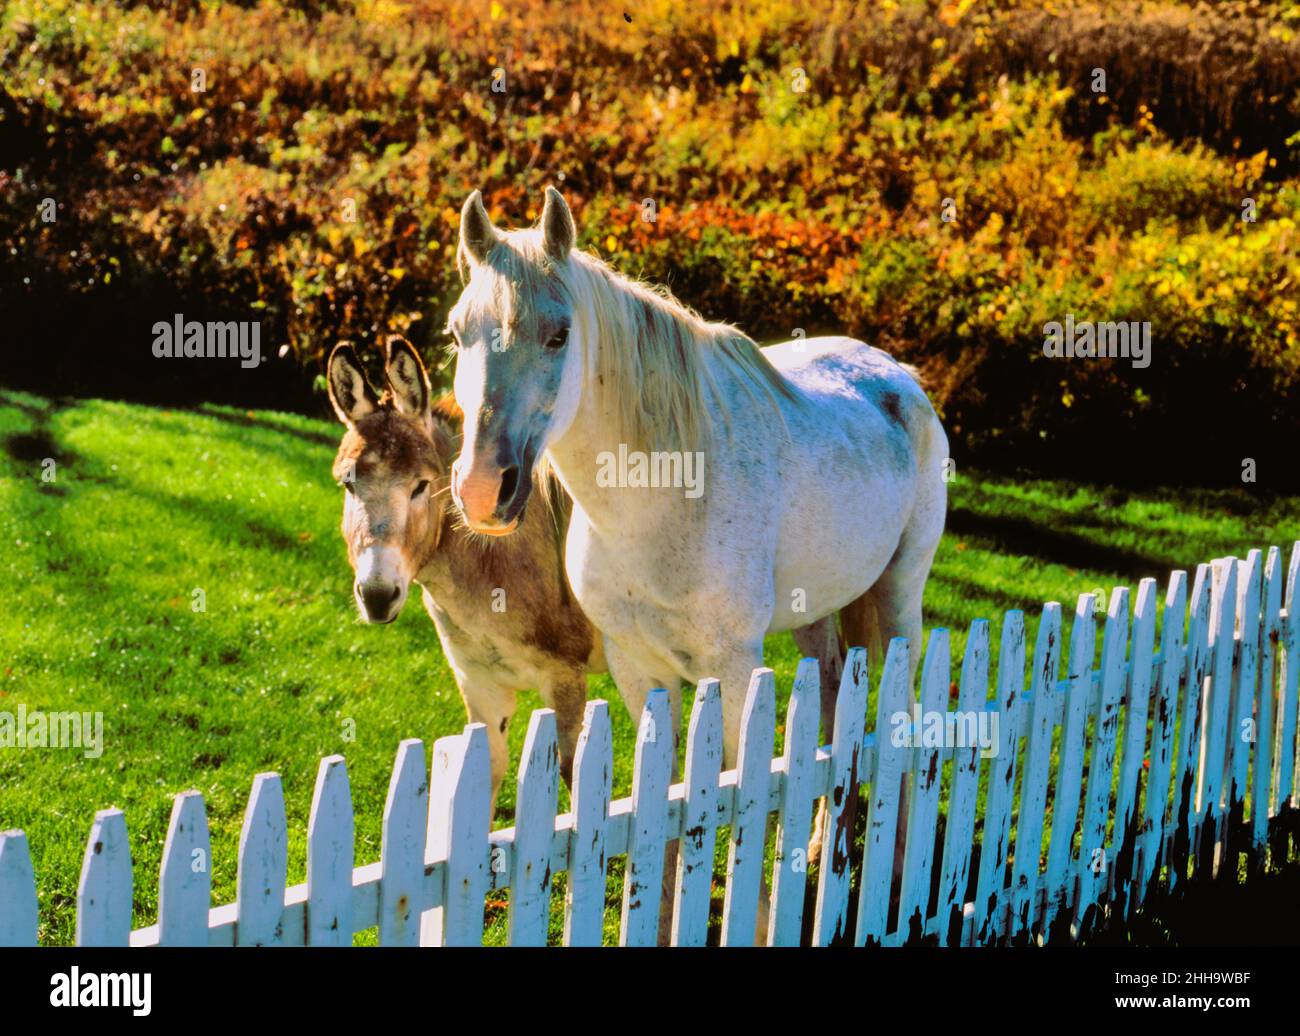 White horse in autumn Stock Photo